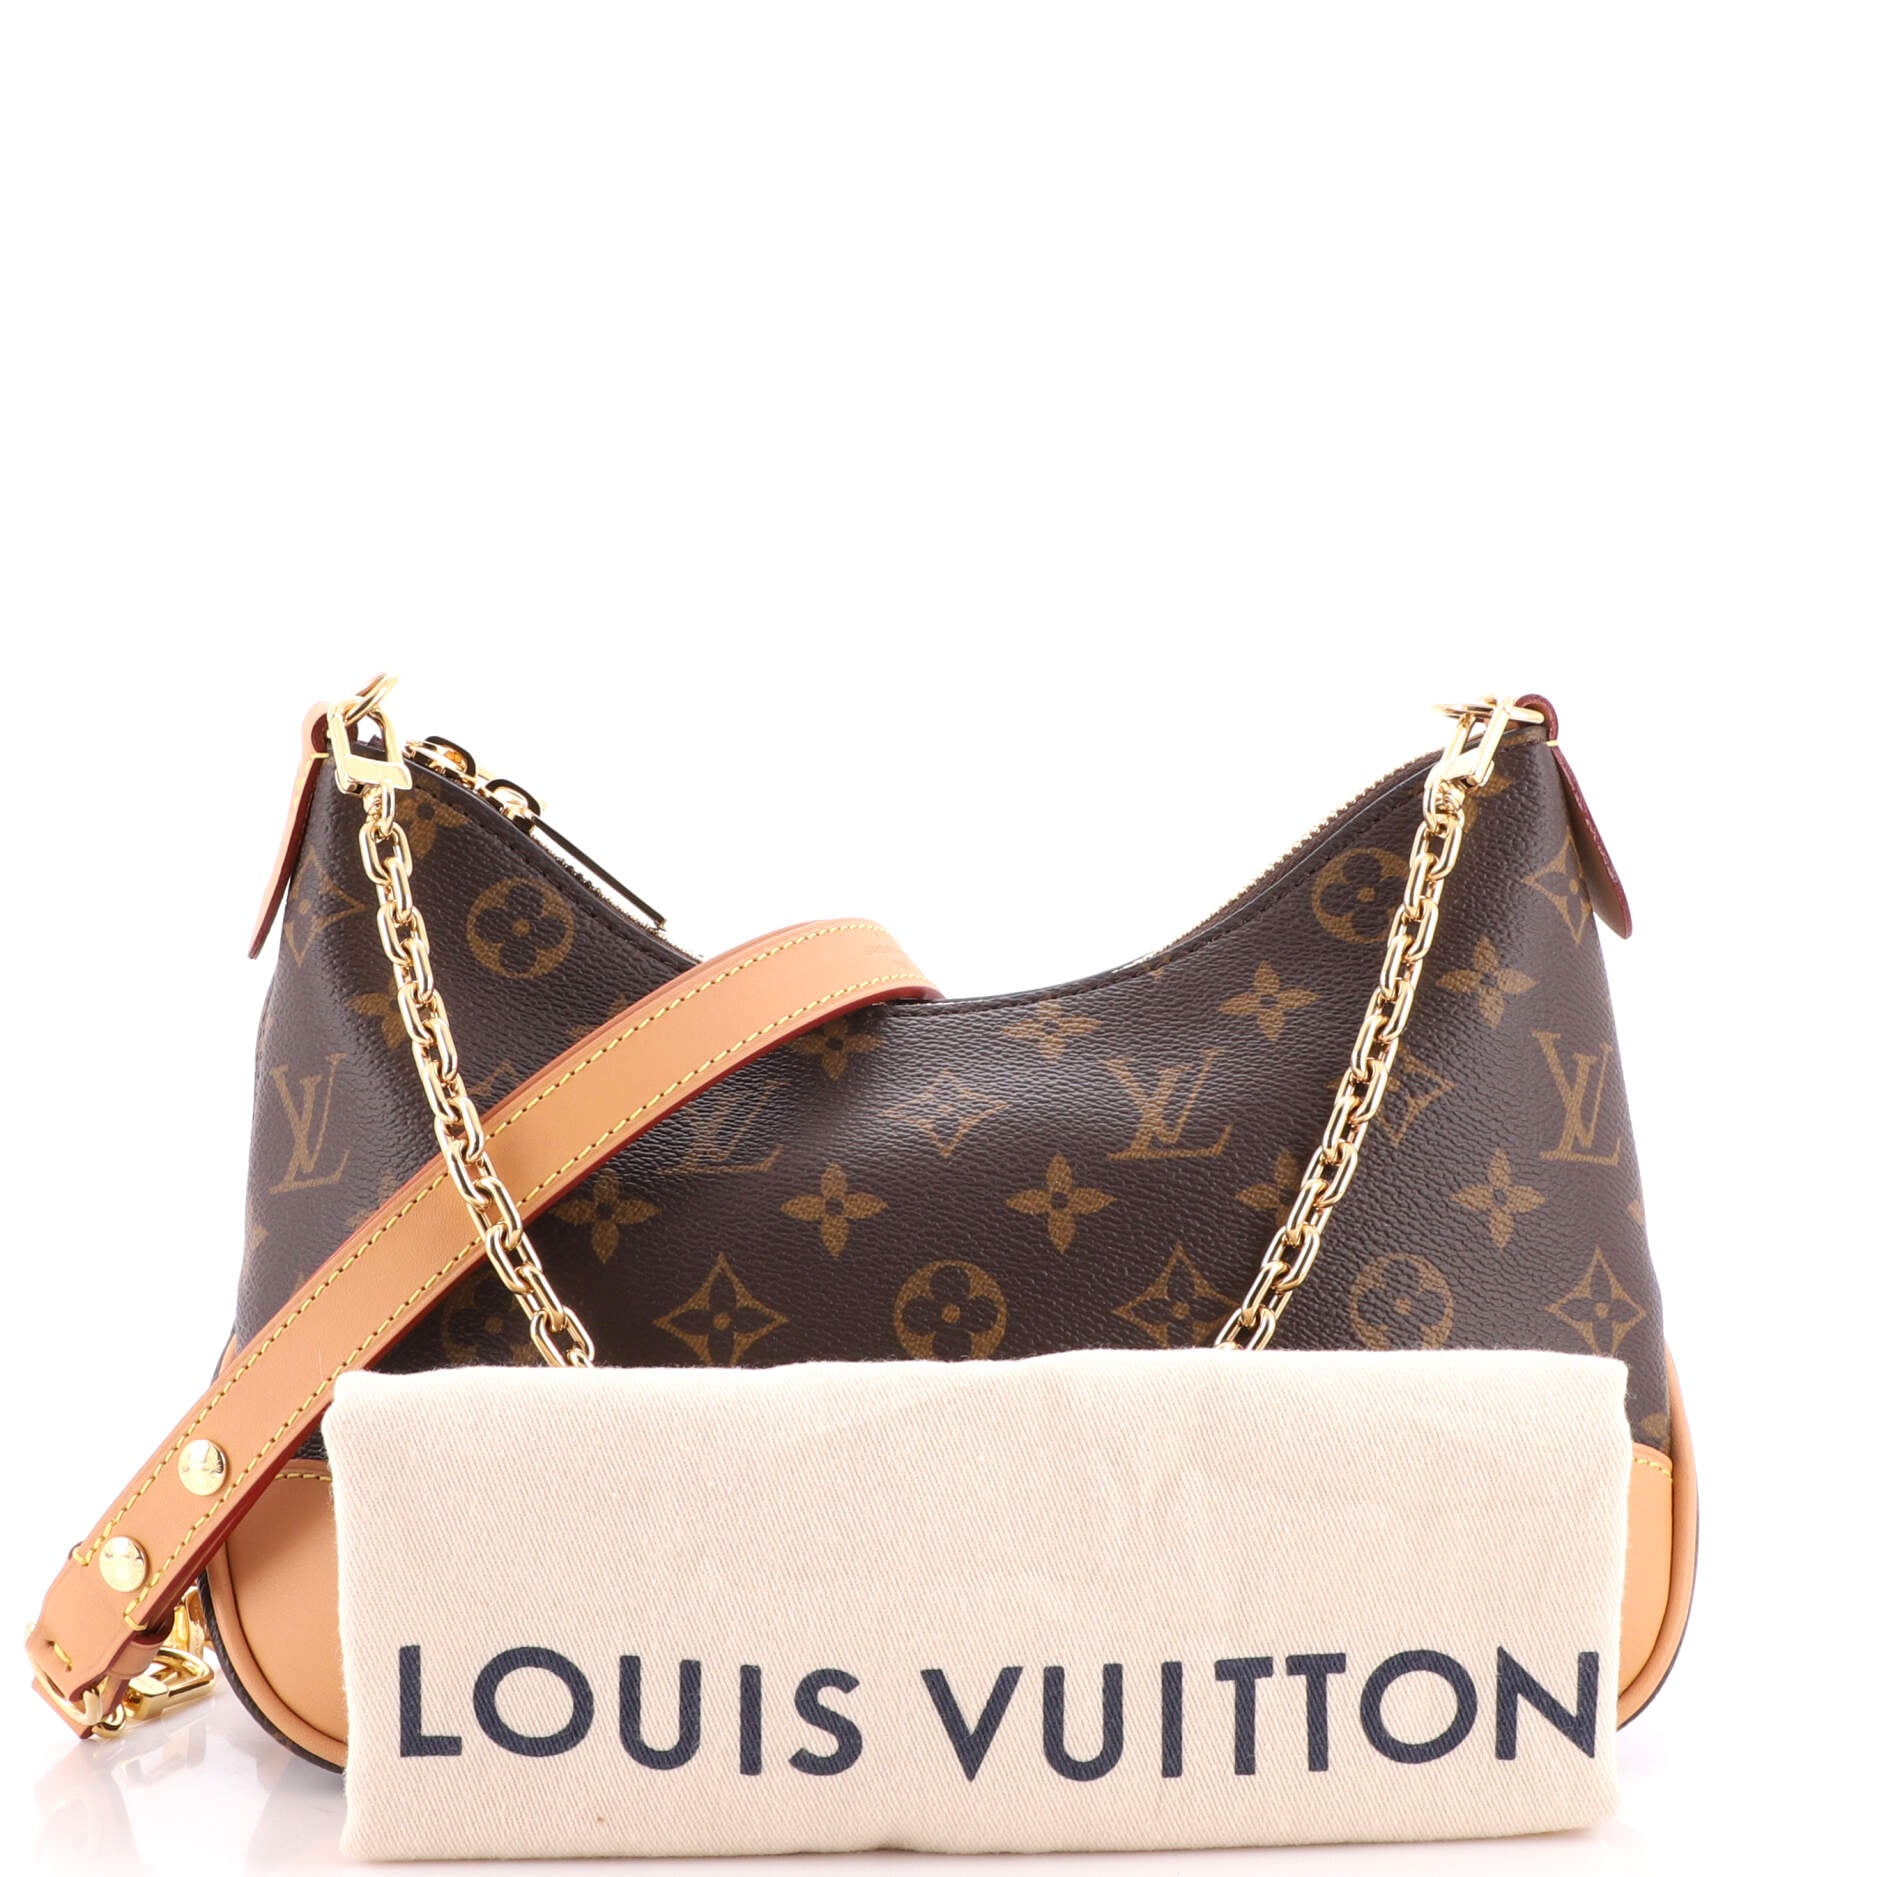 Louis Vuitton 2001 Boulogne Handbag - Farfetch